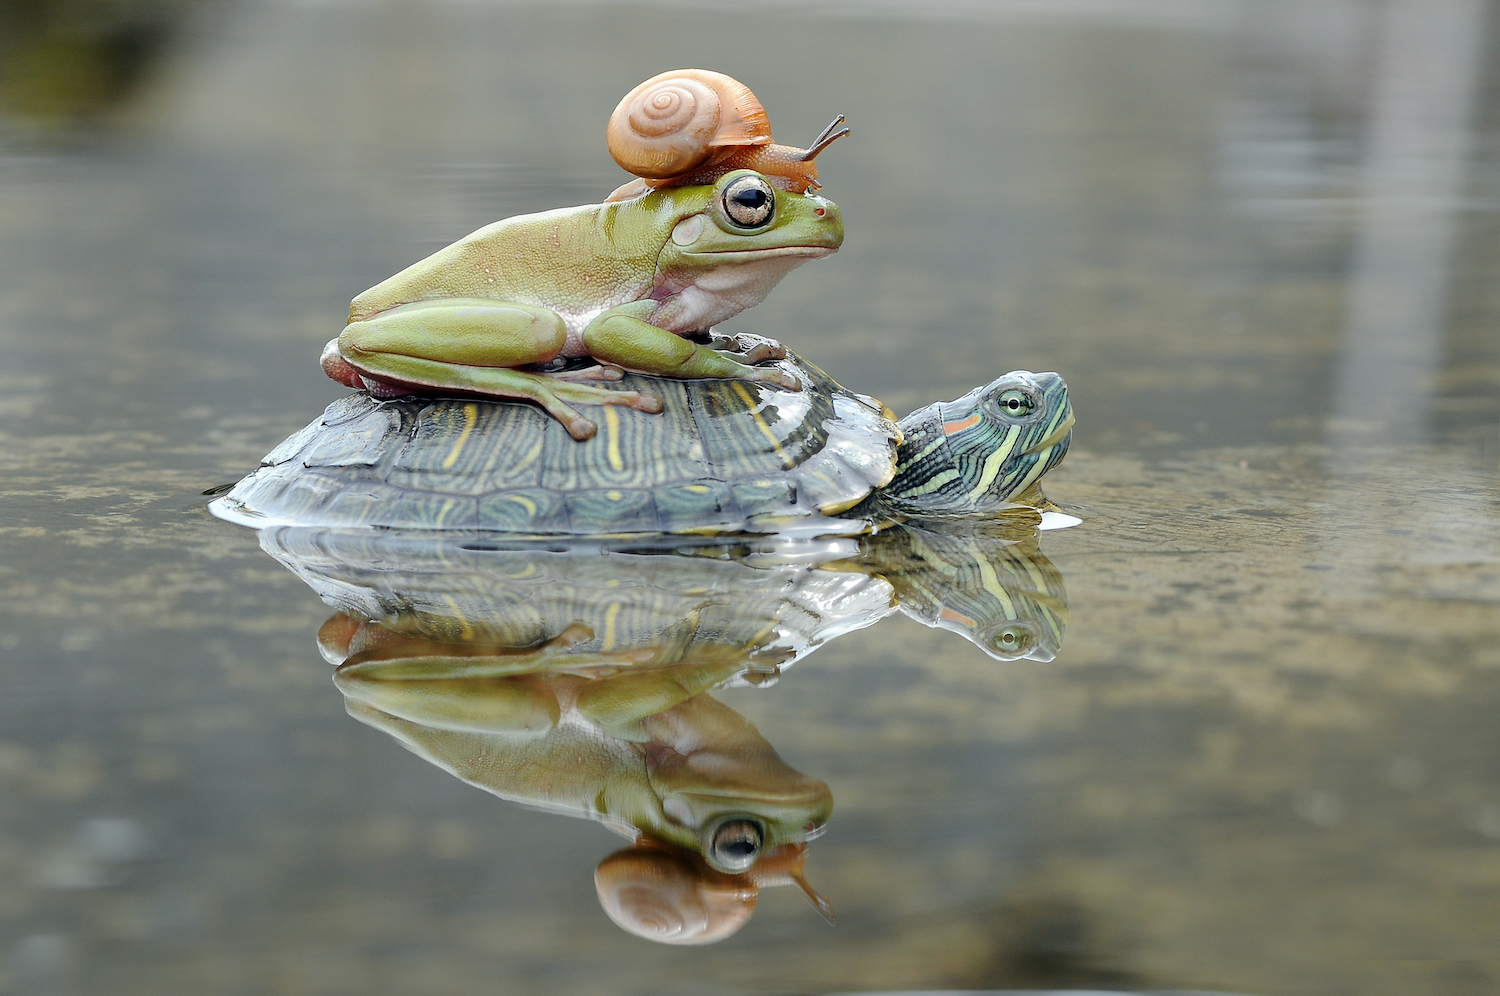 Rana y caracol sobre una tortuga, Indonesia